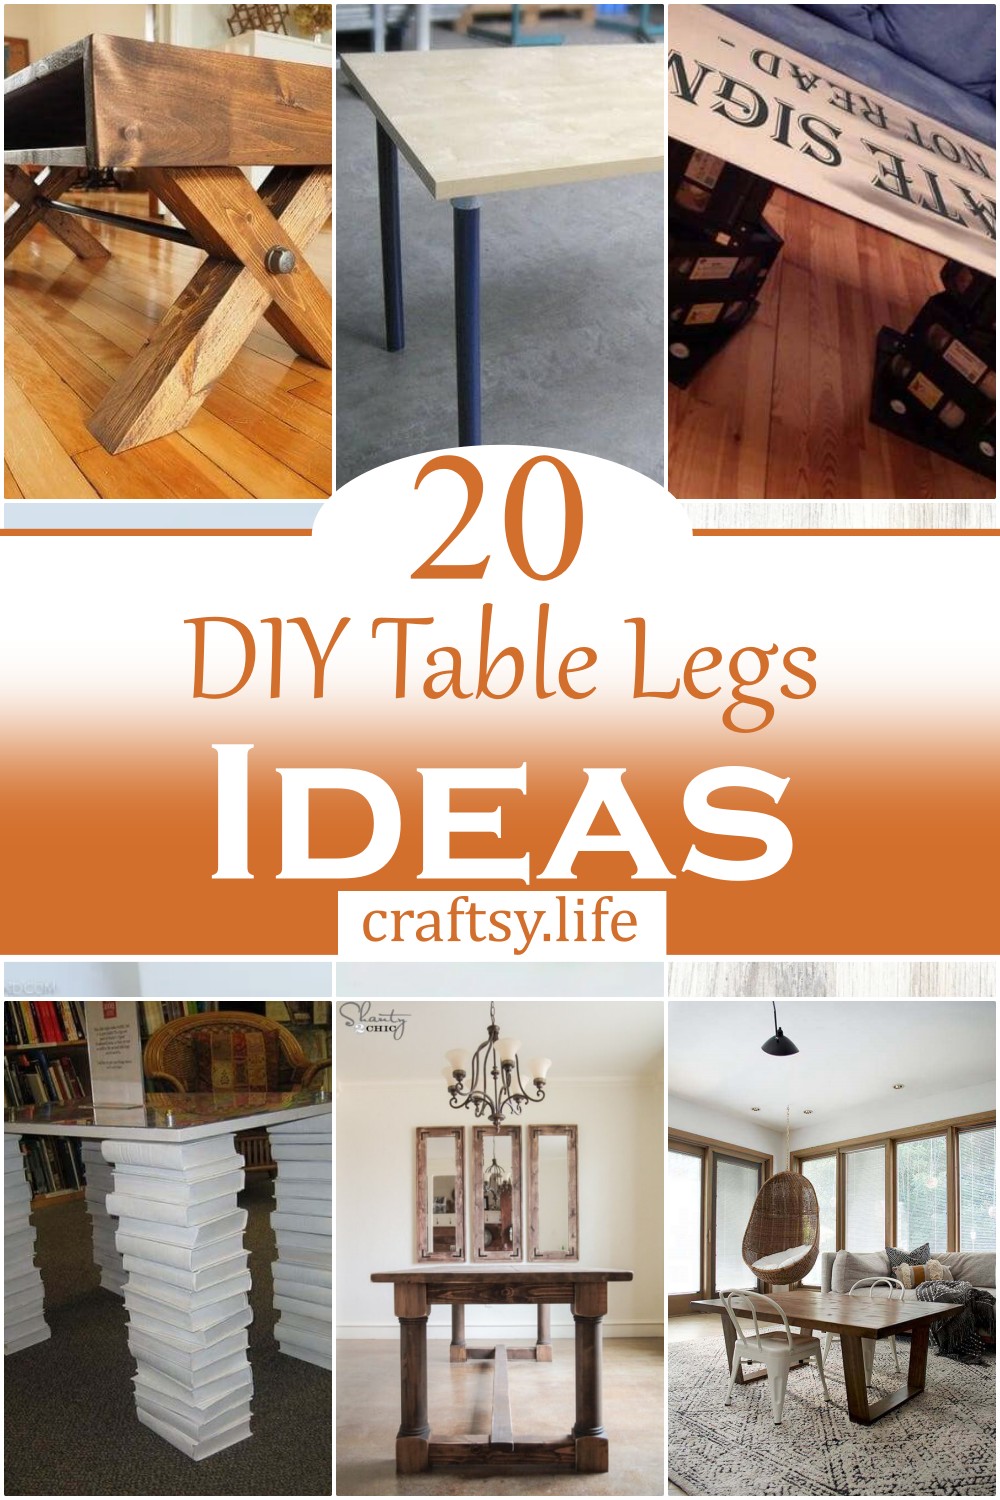 DIY Table Legs Ideas